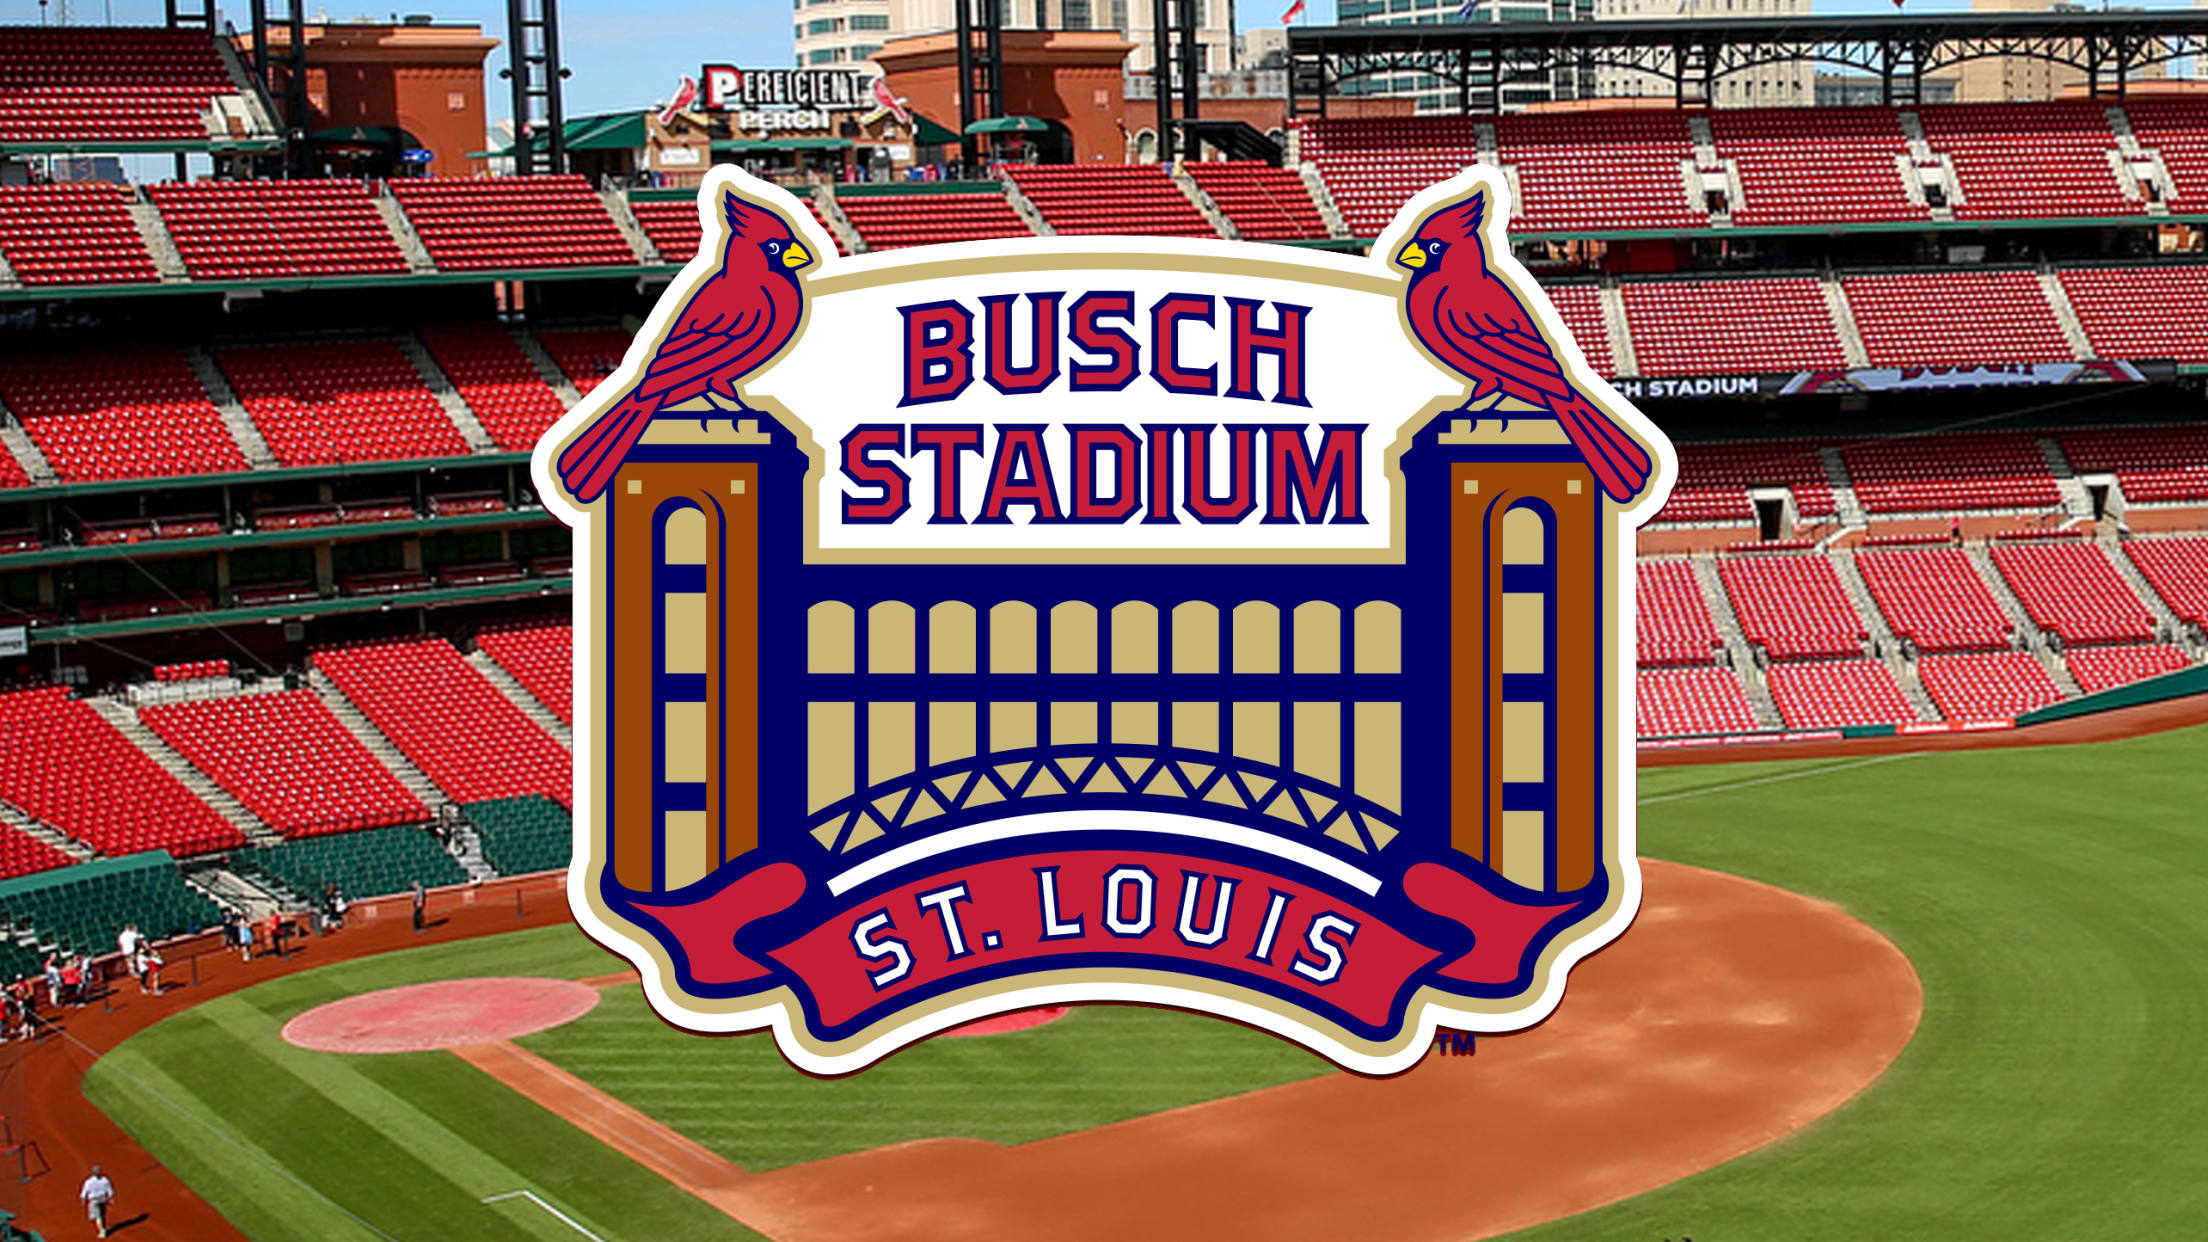 Busch Stadium Baseball Stadium Print, St. Louis Cardinals Baseball